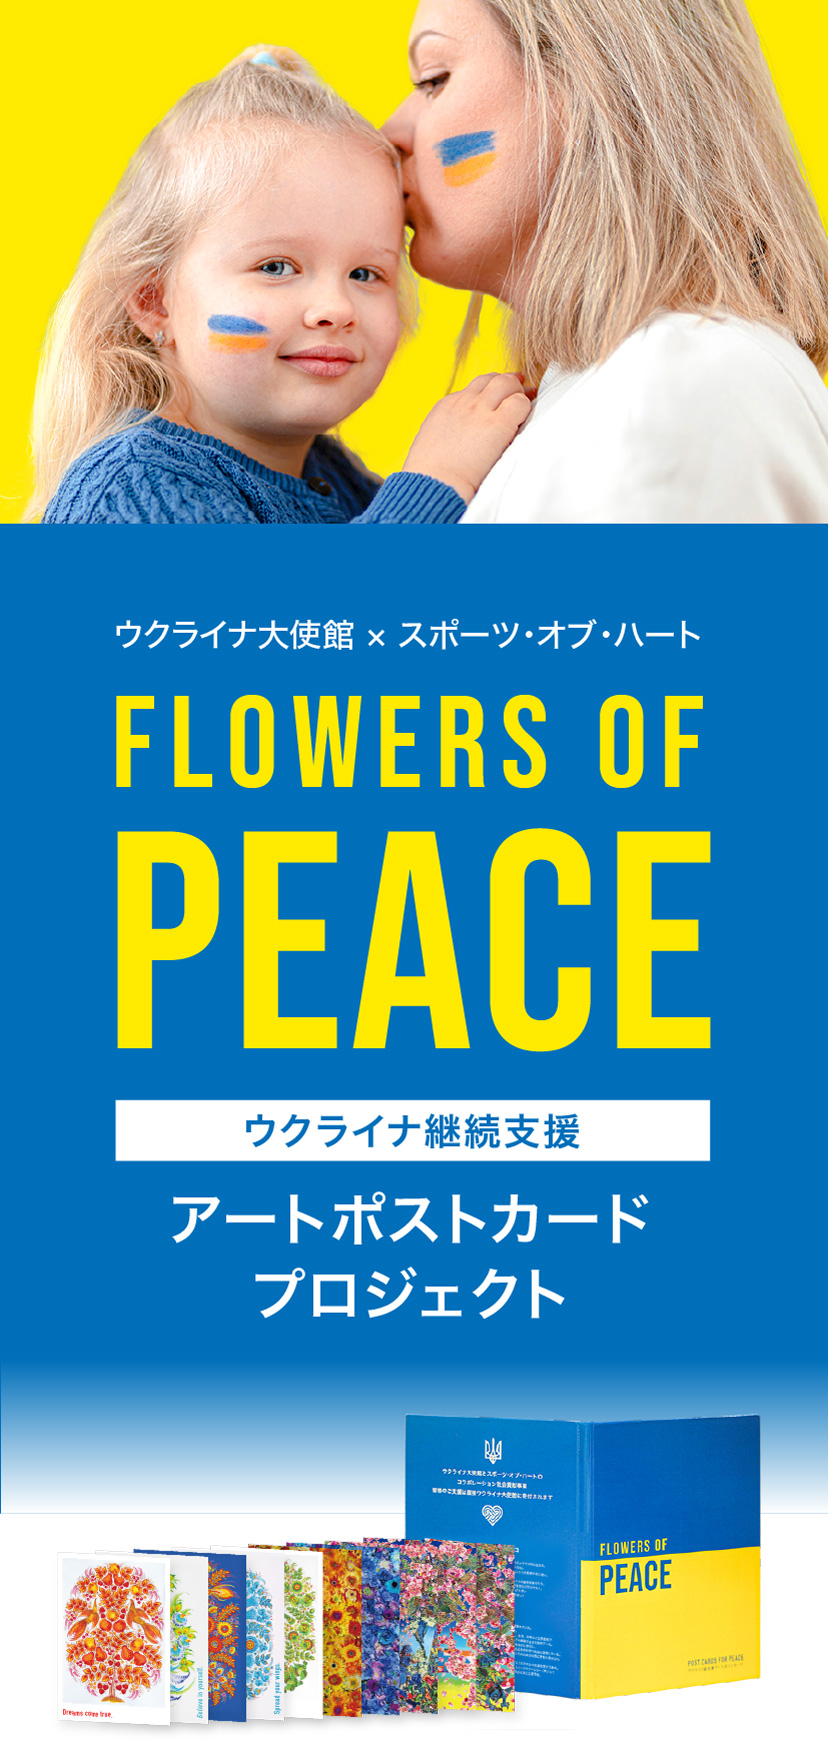 トップ - Flowers of peace ウクライナ継続支援「アートポストカード